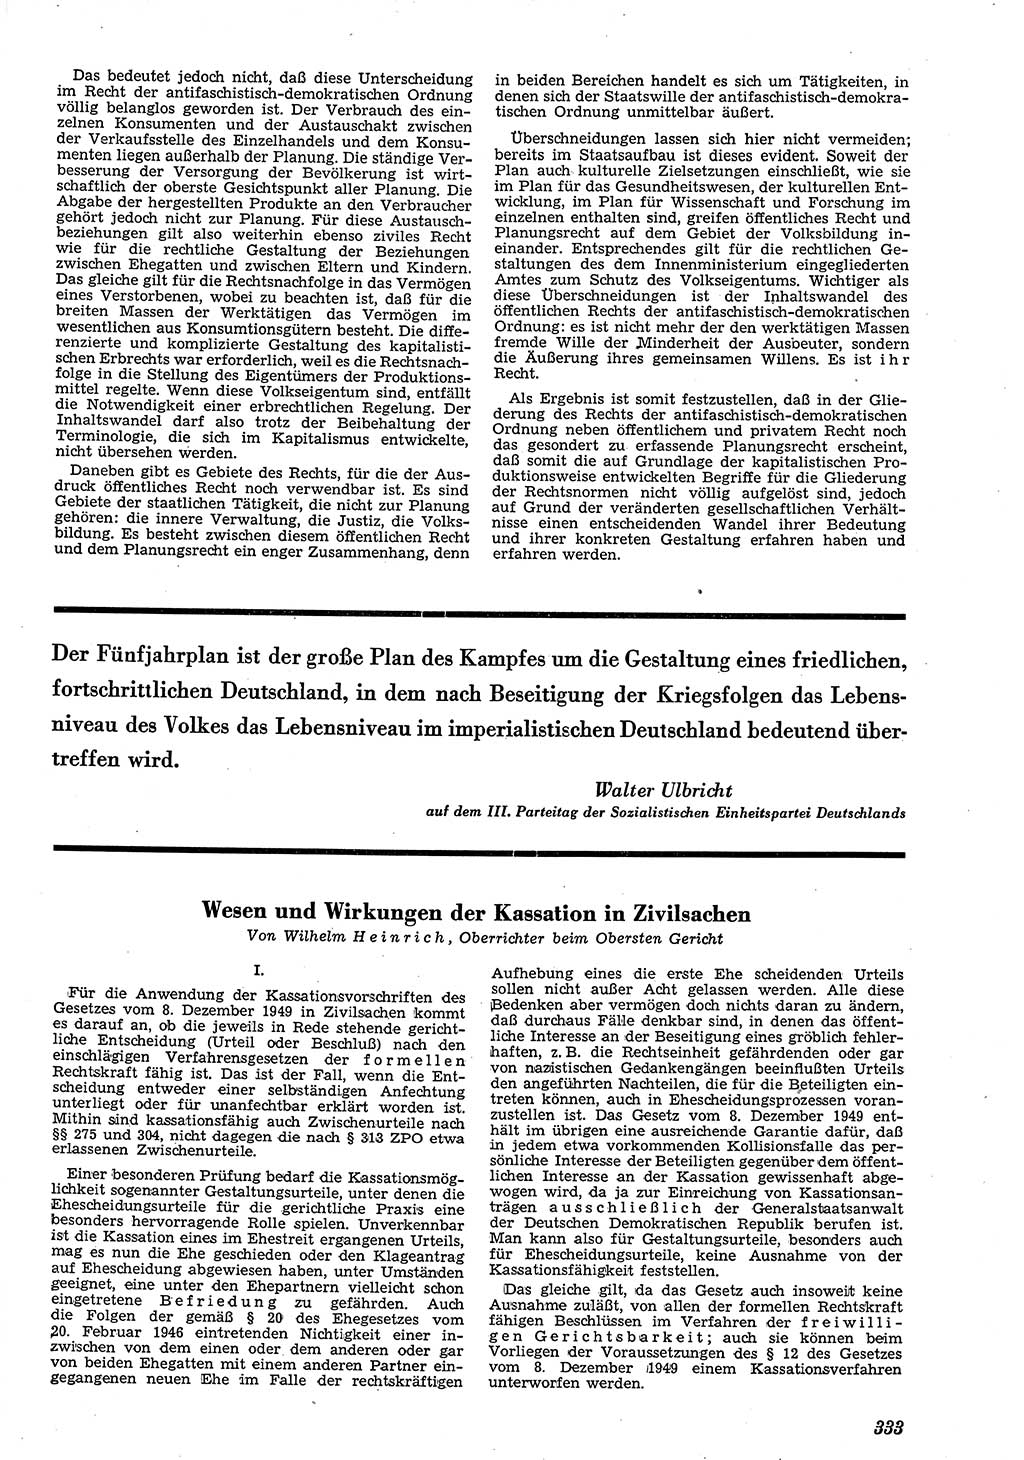 Neue Justiz (NJ), Zeitschrift für Recht und Rechtswissenschaft [Deutsche Demokratische Republik (DDR)], 4. Jahrgang 1950, Seite 333 (NJ DDR 1950, S. 333)